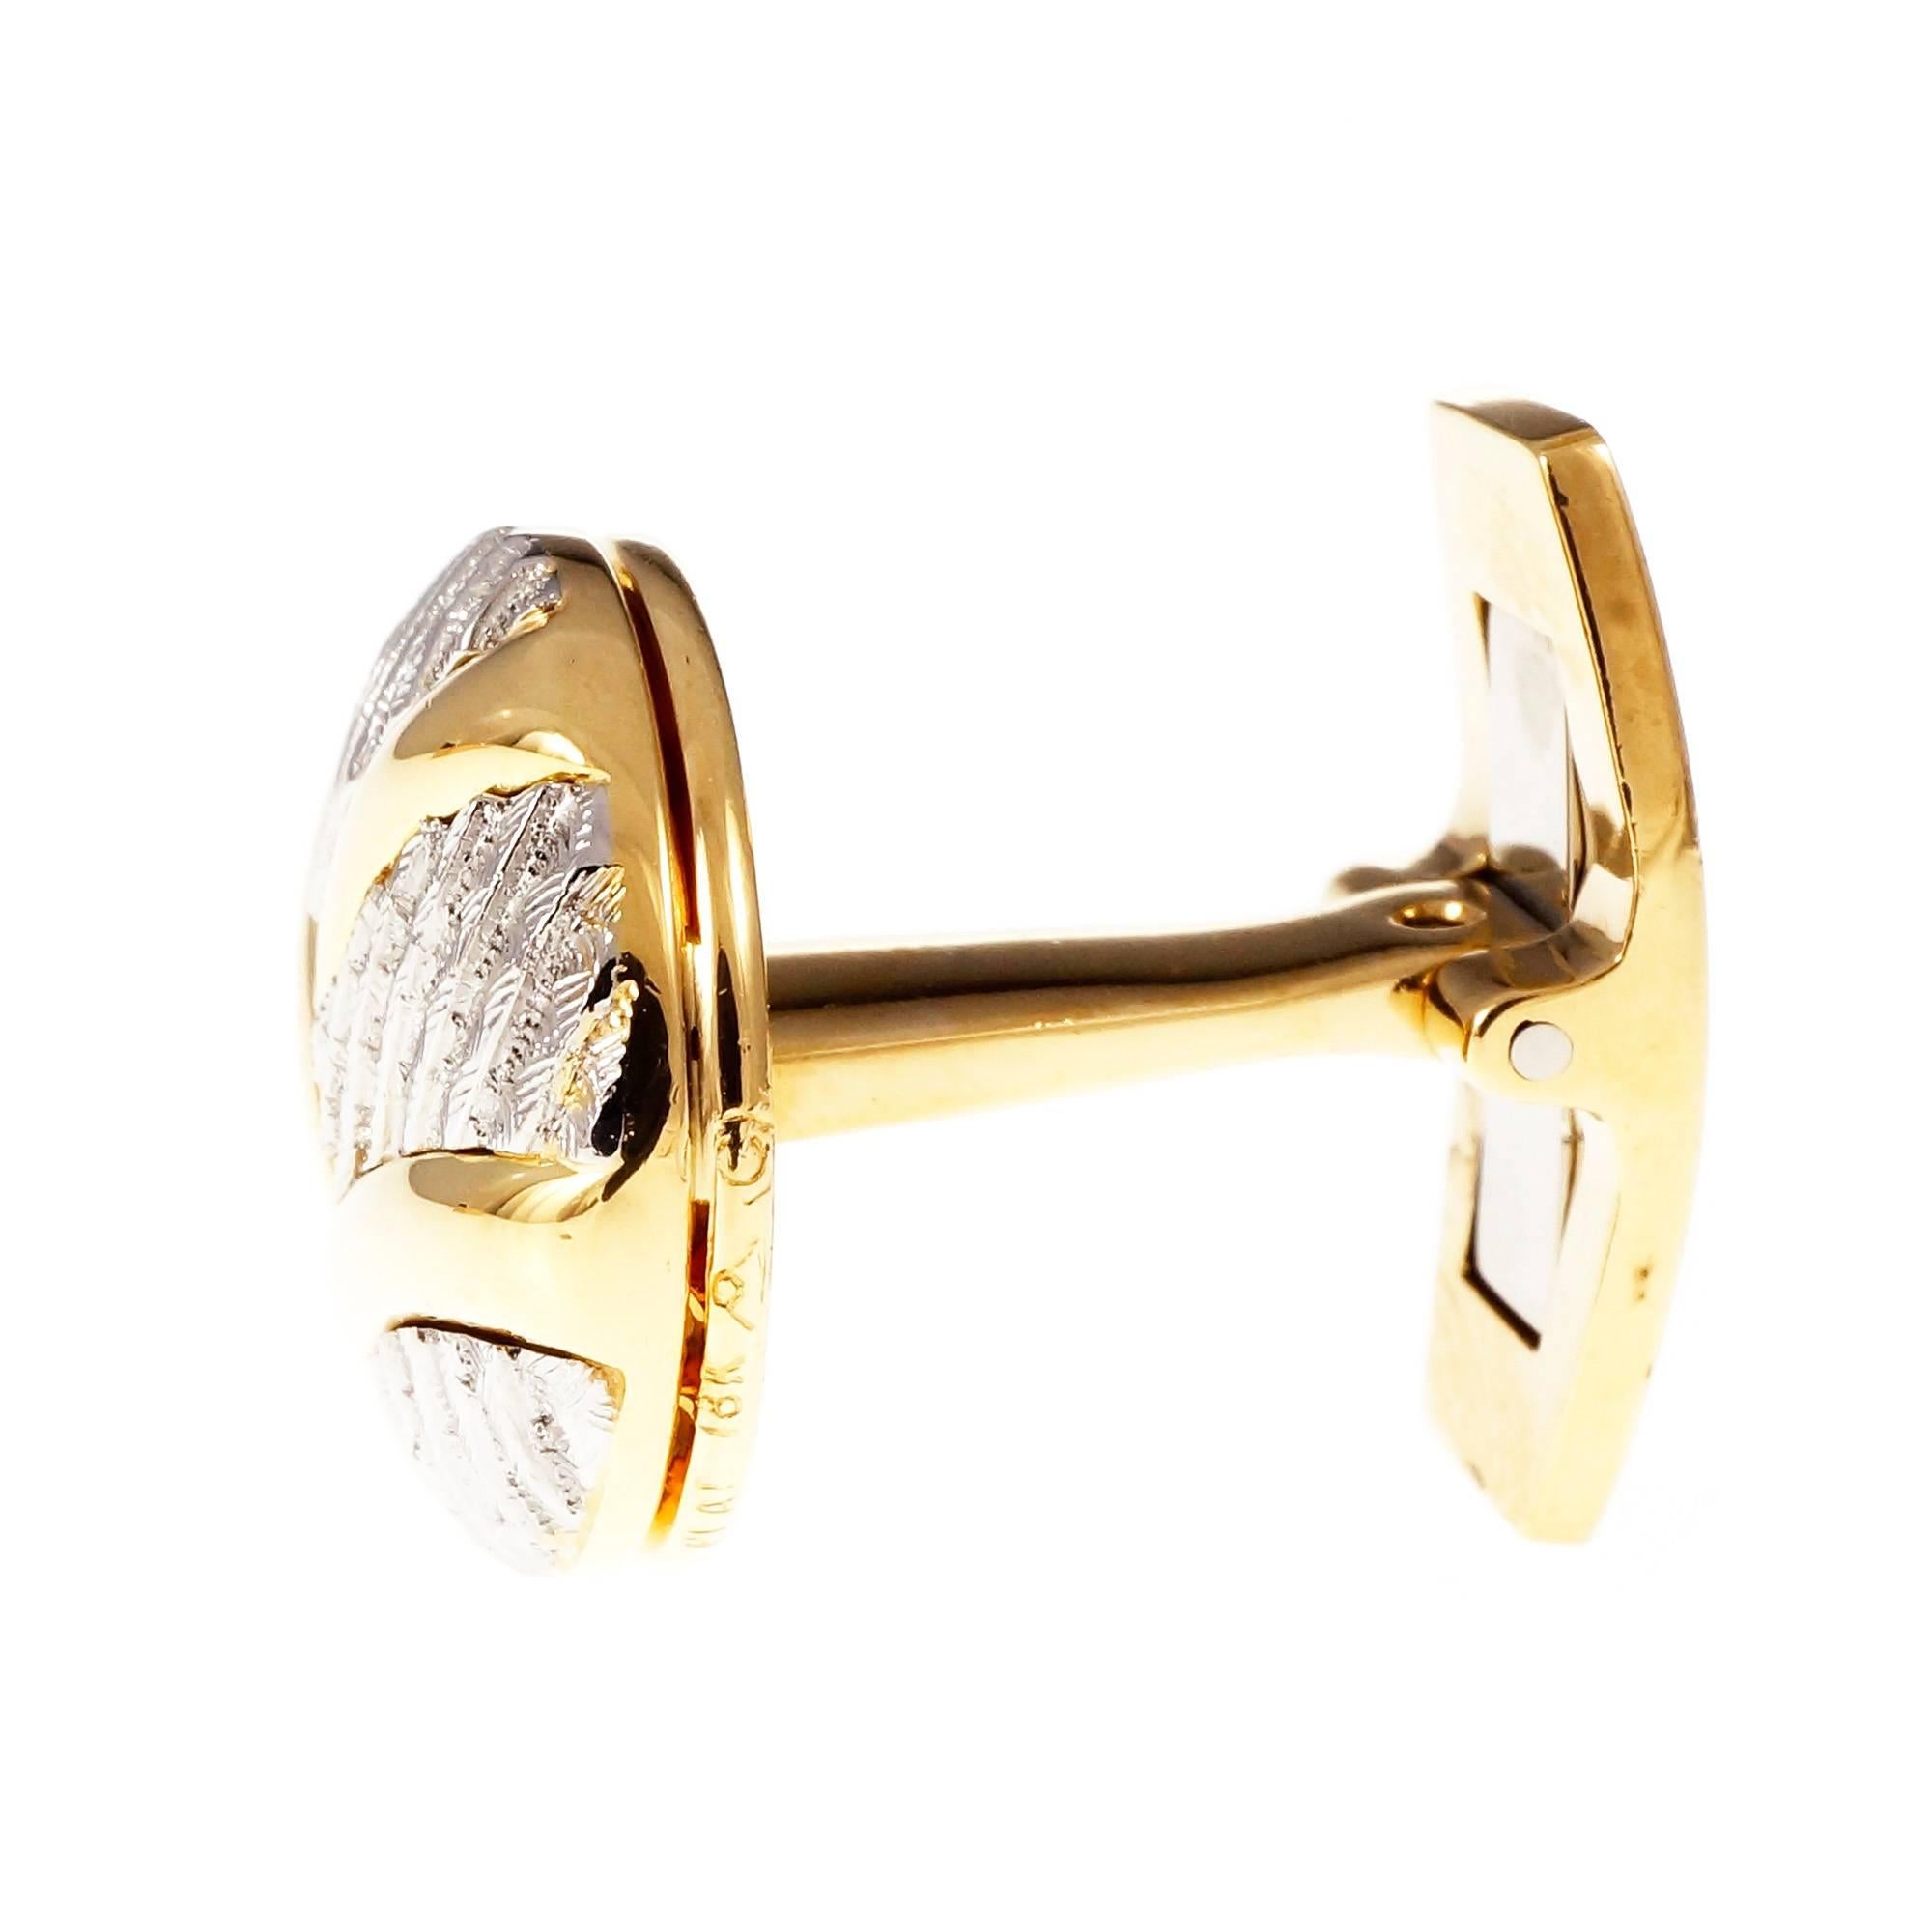 Handmade Round Button Style Gold Platinum Cufflinks For Sale 2